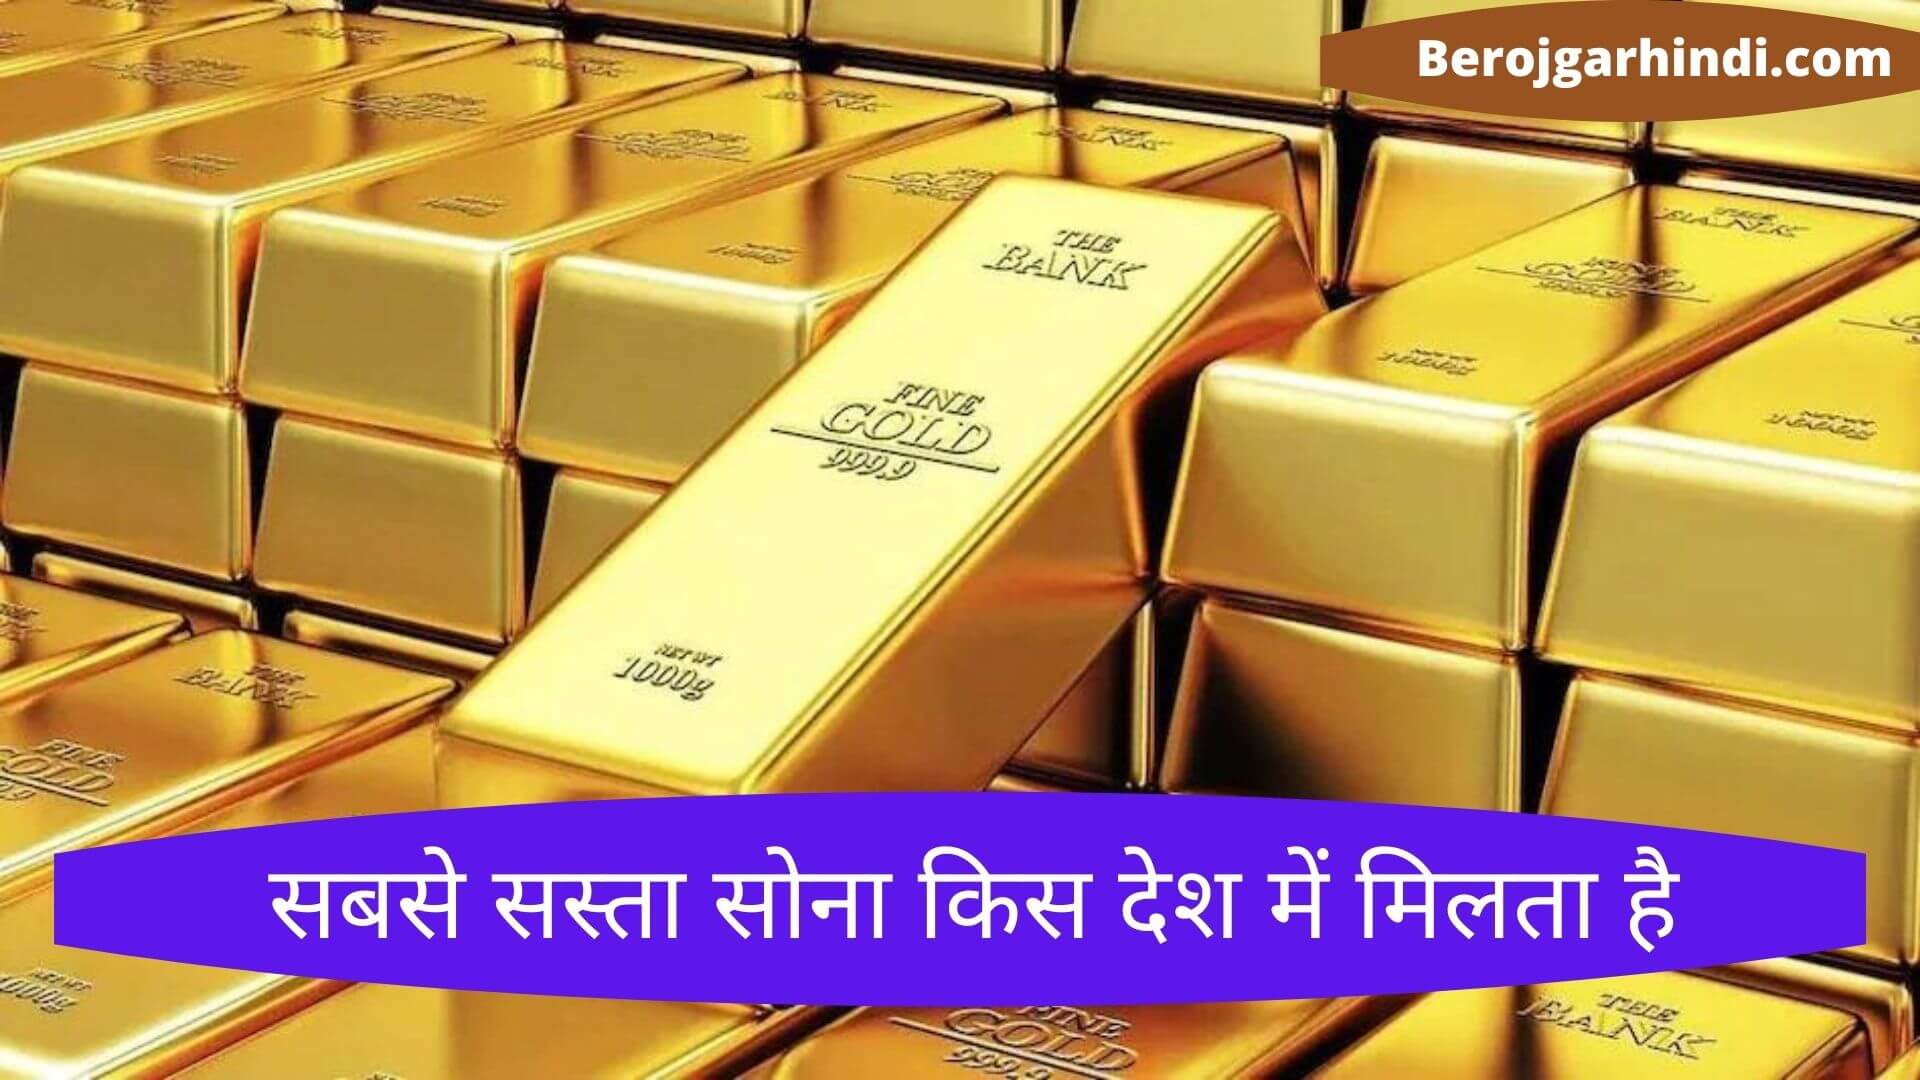 सबसे सस्ता सोना किस देश में मिलता है | Sabse Sasta Sona Kis Desh Me Milta Hai